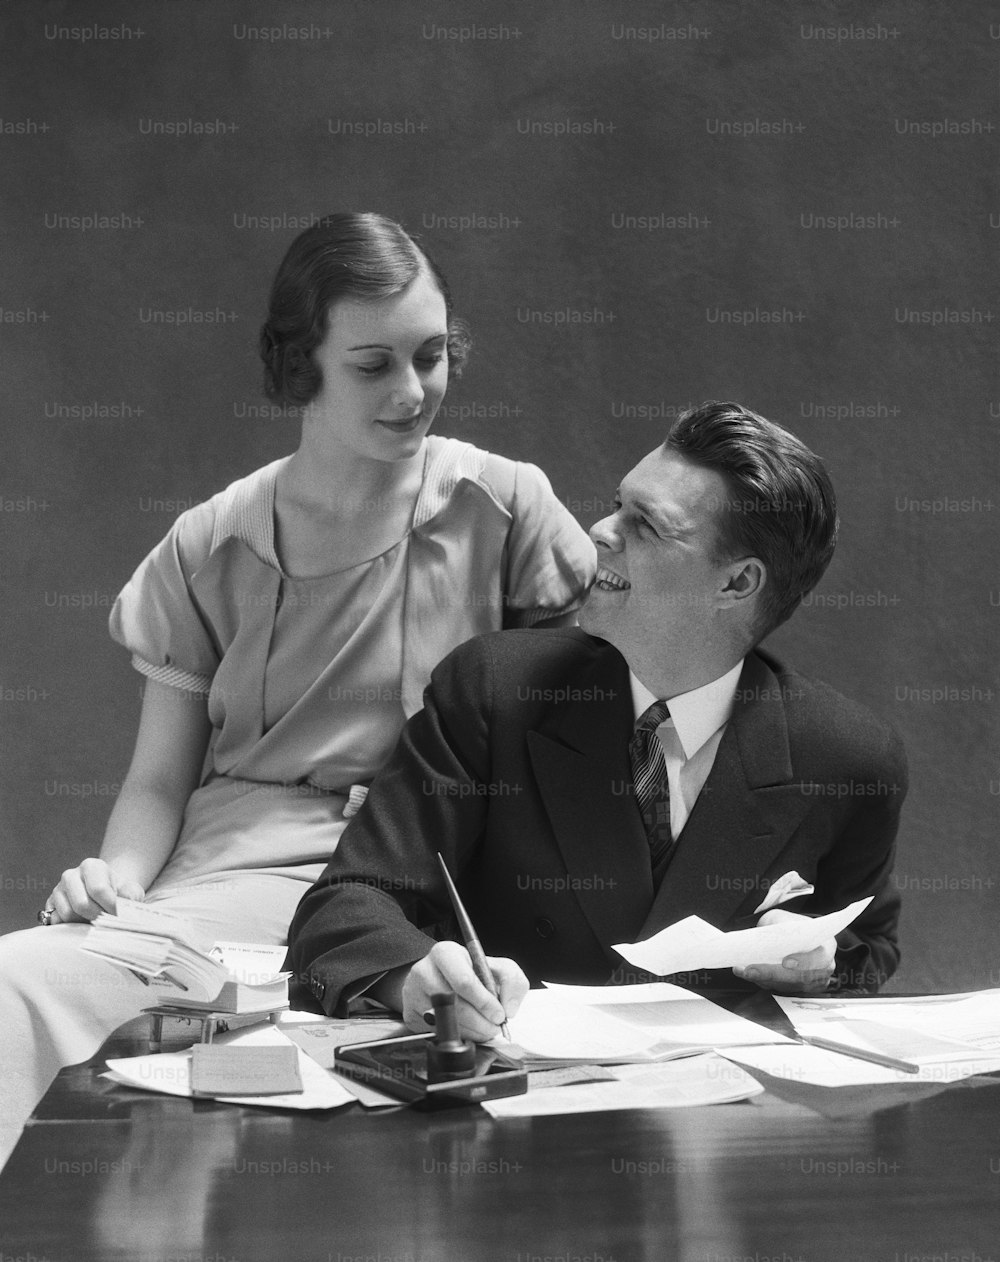 ESTADOS UNIDOS - CIRCA 1930s: Pareja sentada en el escritorio, hombre mirando a la mujer sentada en el brazo de la silla.